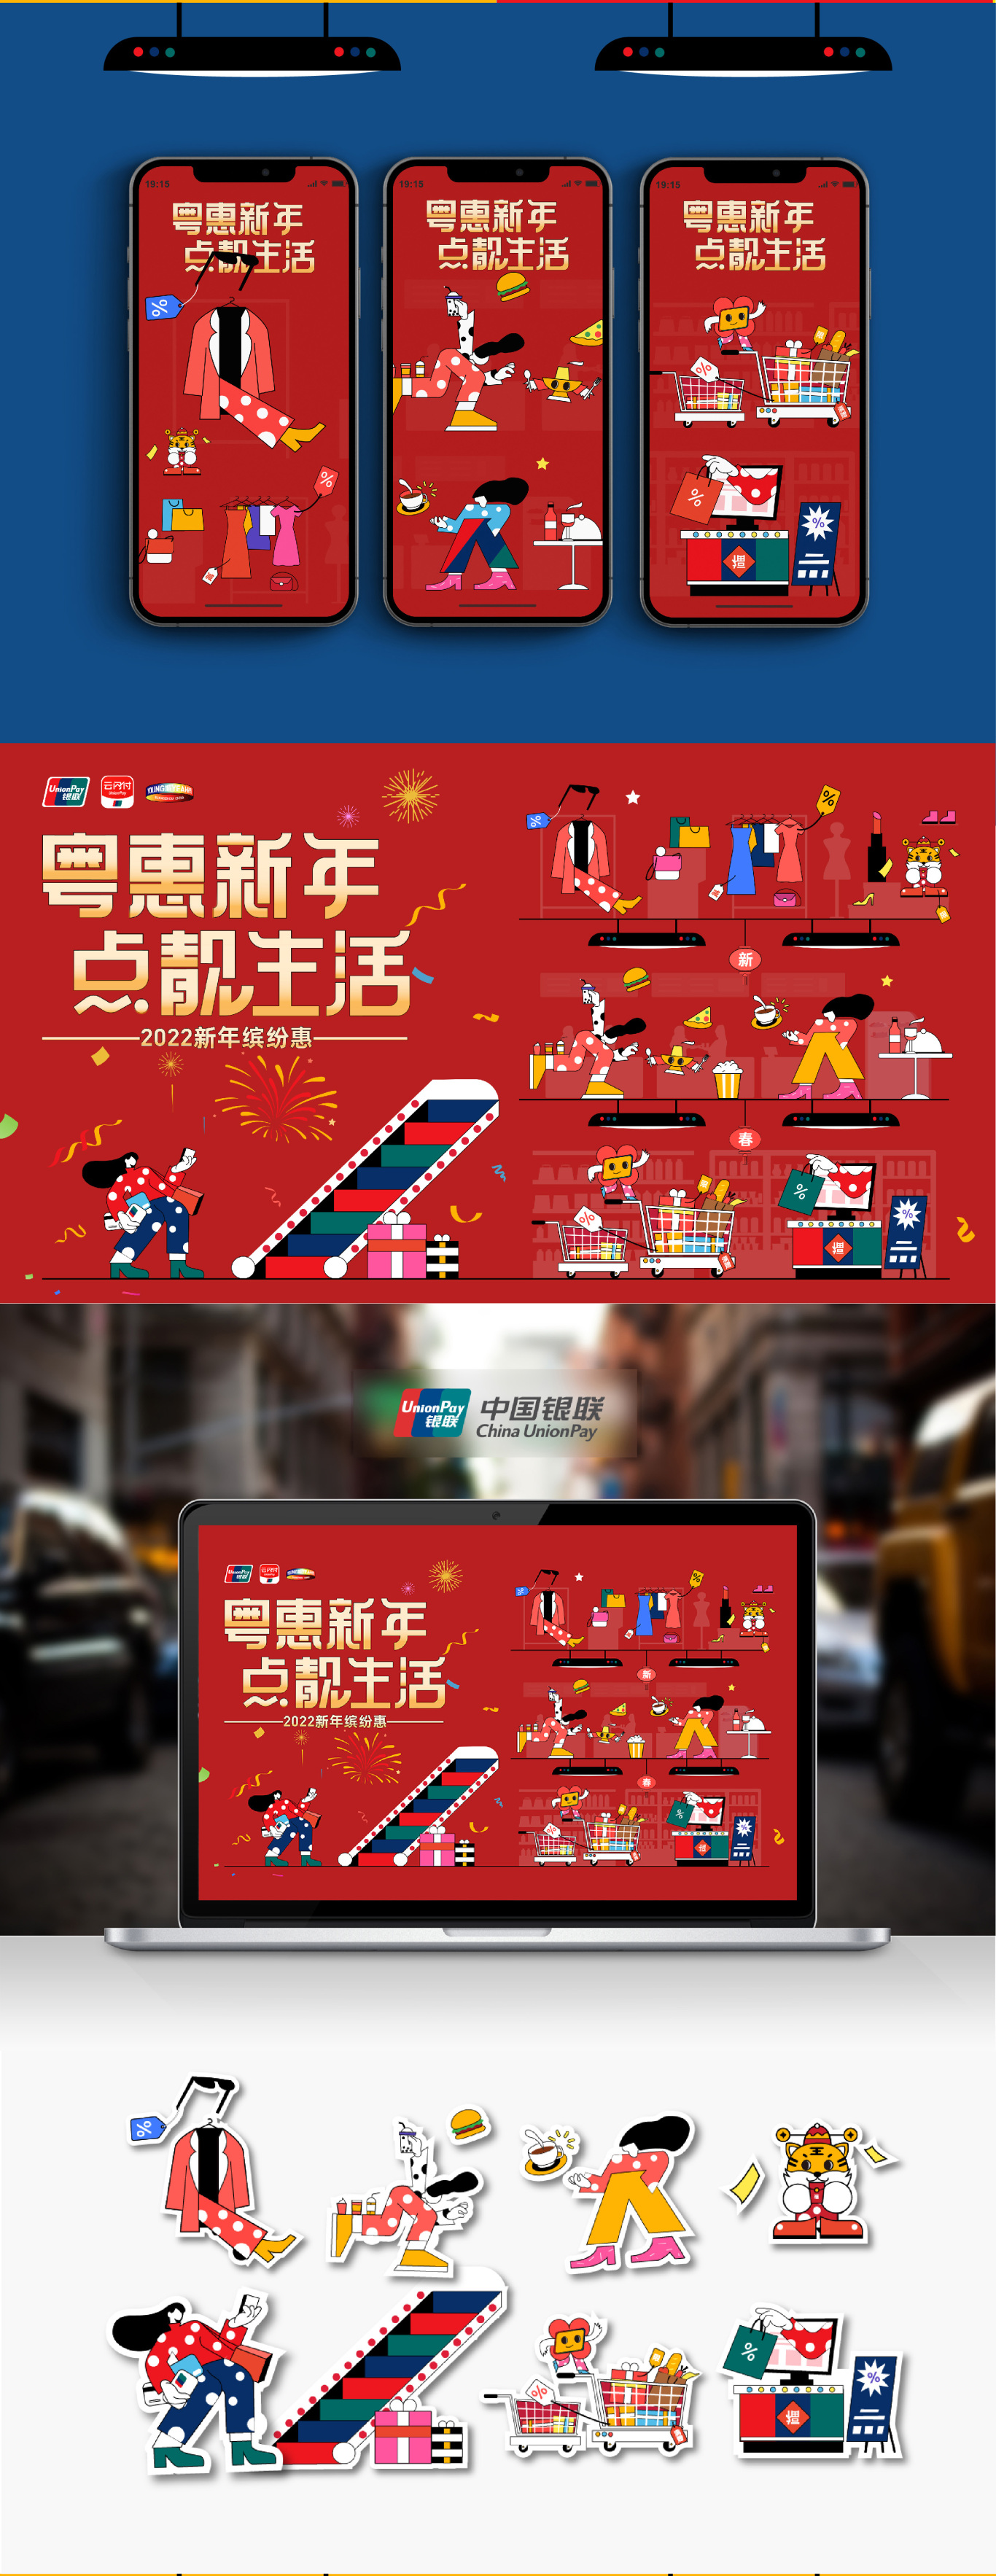 广东银联2022年跨年购物季活动一一粤惠新年，点靓生活图1